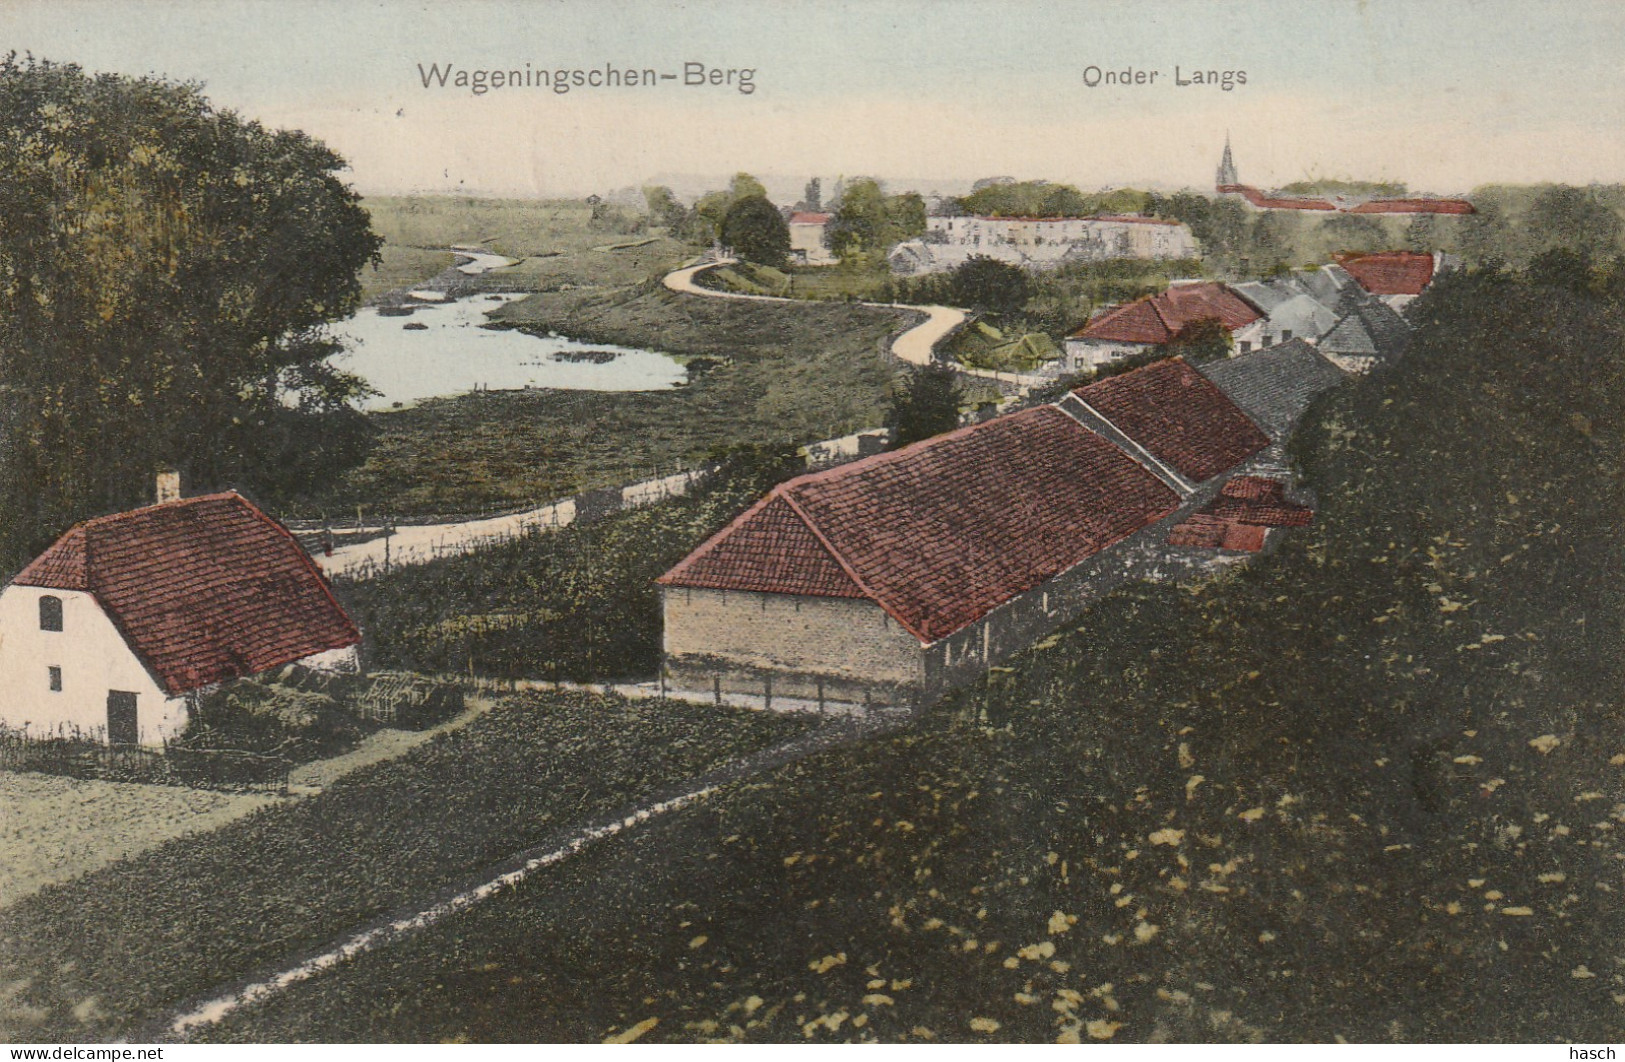 4894 316 Wageningschen Berg, Onder Langs 1908 Met LBPK 1826 Wageningen 1 - Wageningen